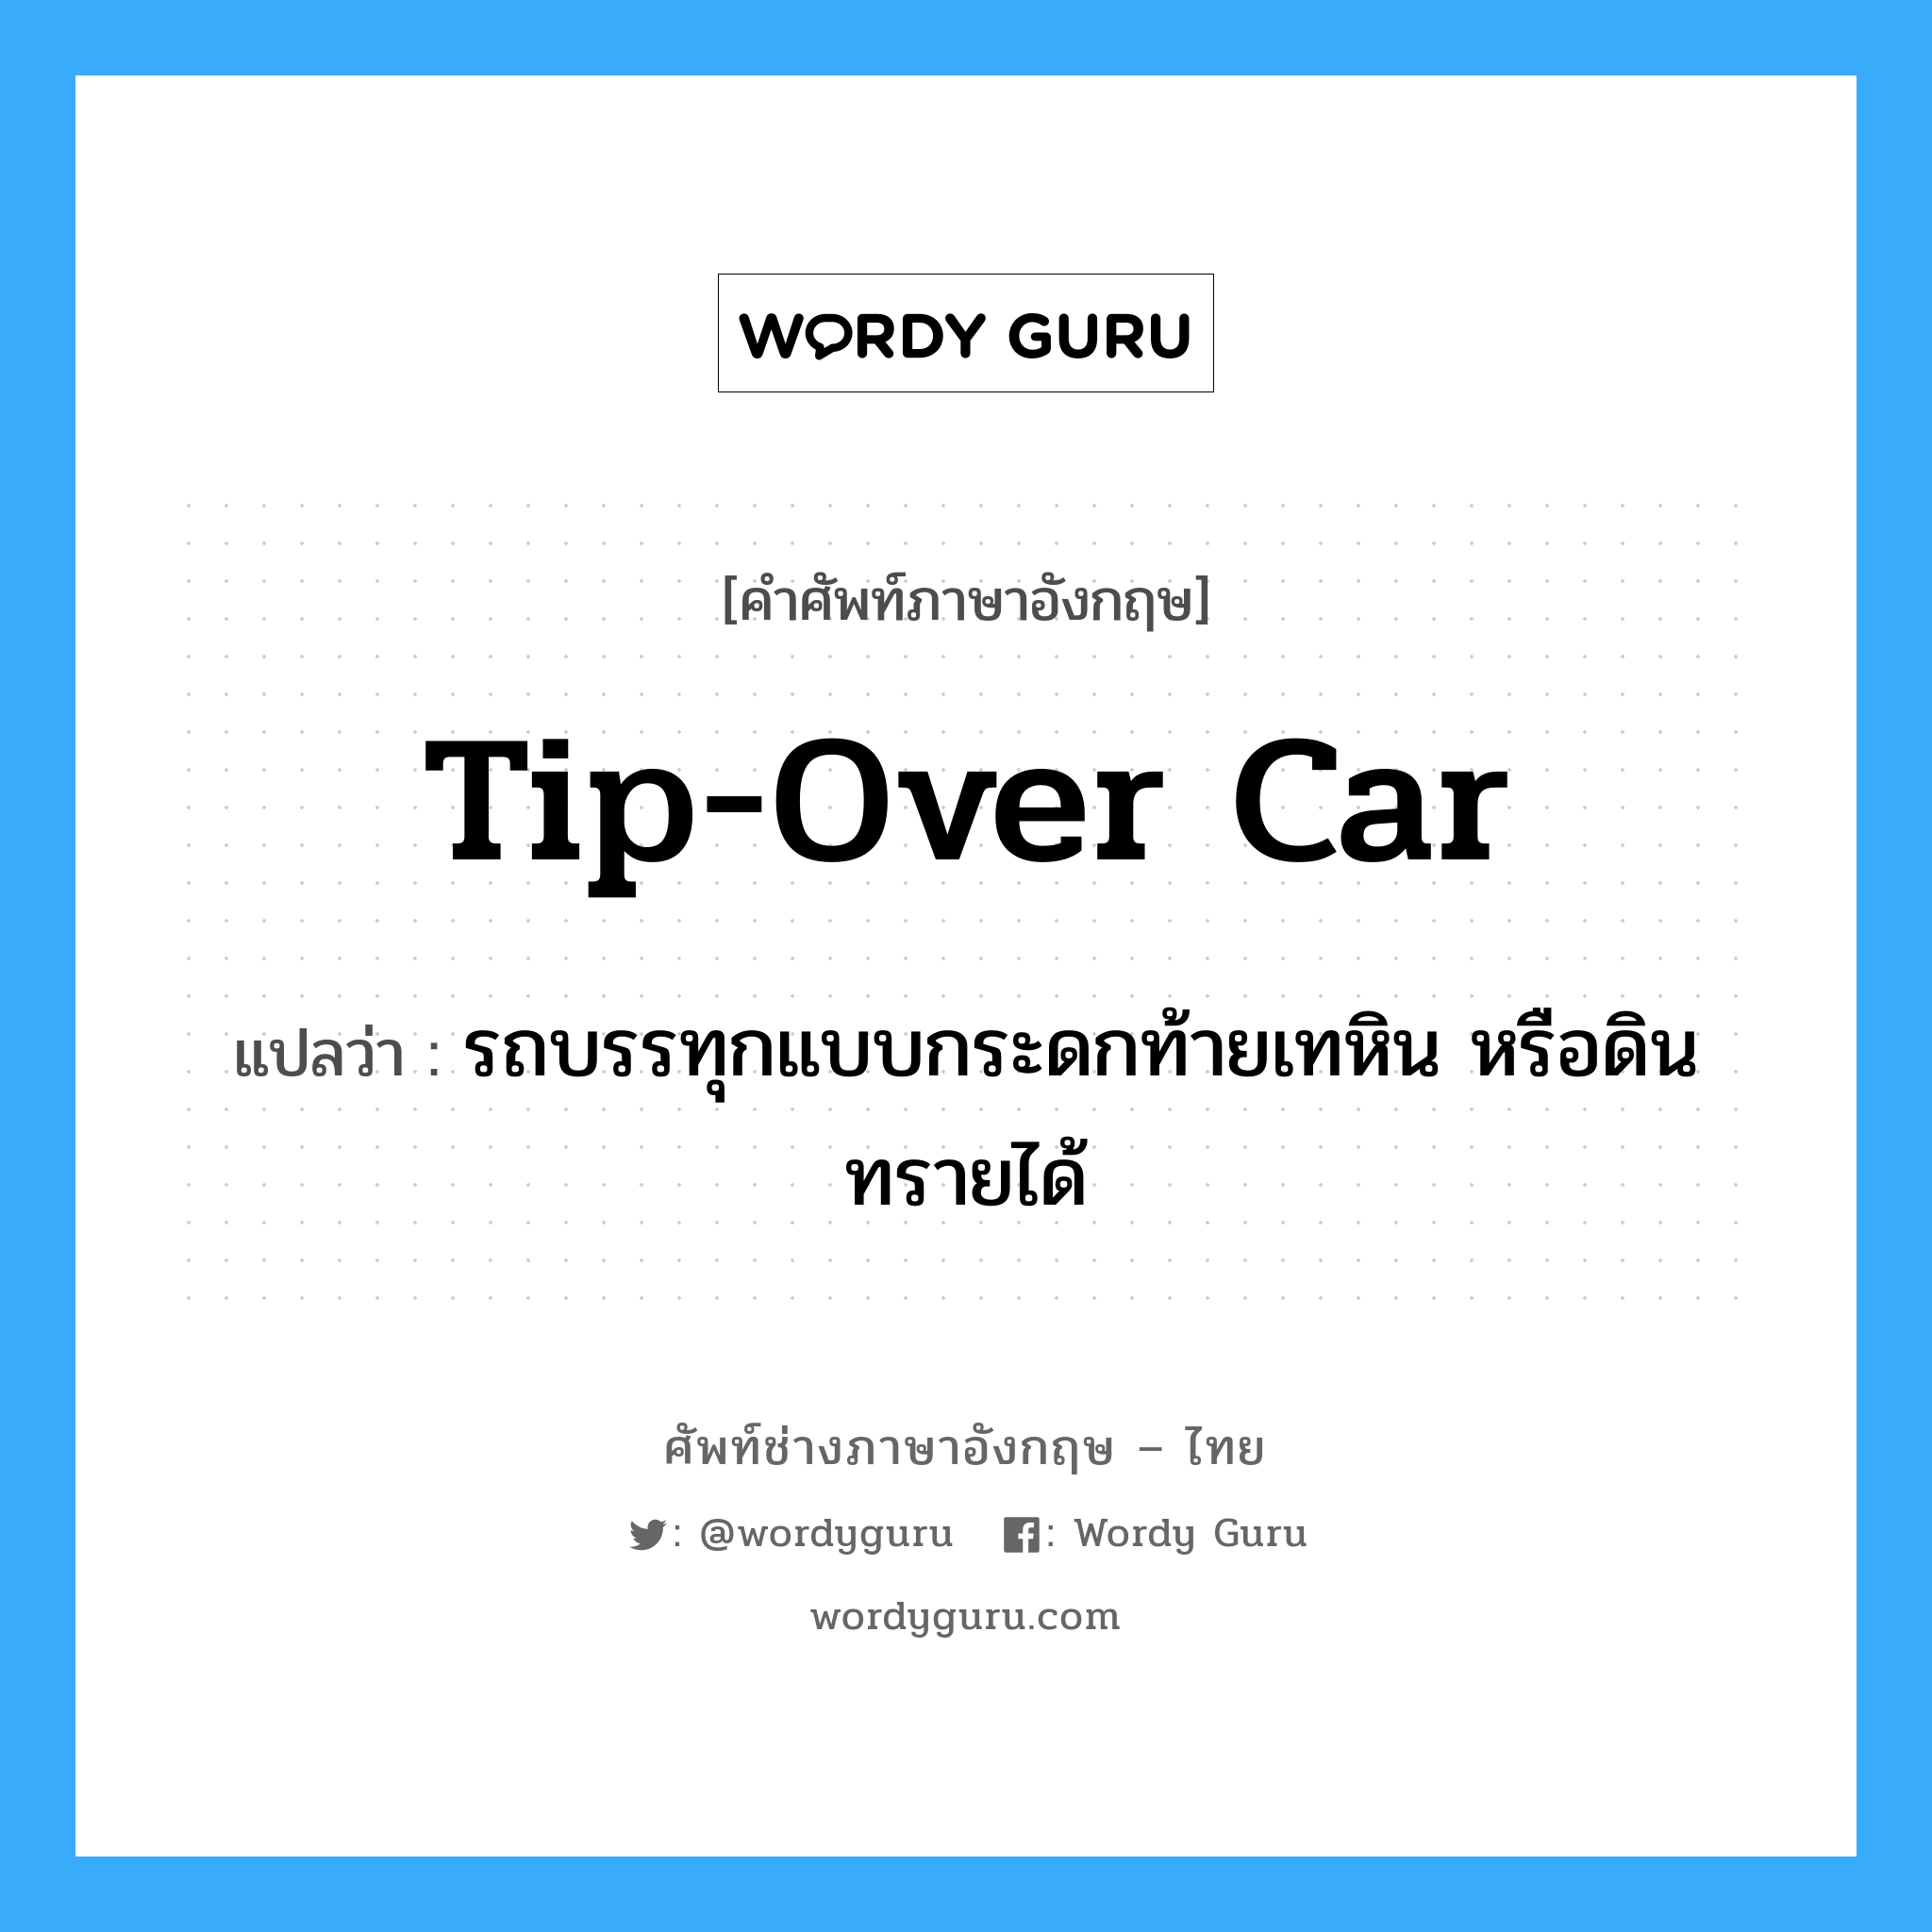 tip-over car แปลว่า?, คำศัพท์ช่างภาษาอังกฤษ - ไทย tip-over car คำศัพท์ภาษาอังกฤษ tip-over car แปลว่า รถบรรทุกแบบกระดกท้ายเทหิน หรือดินทรายได้